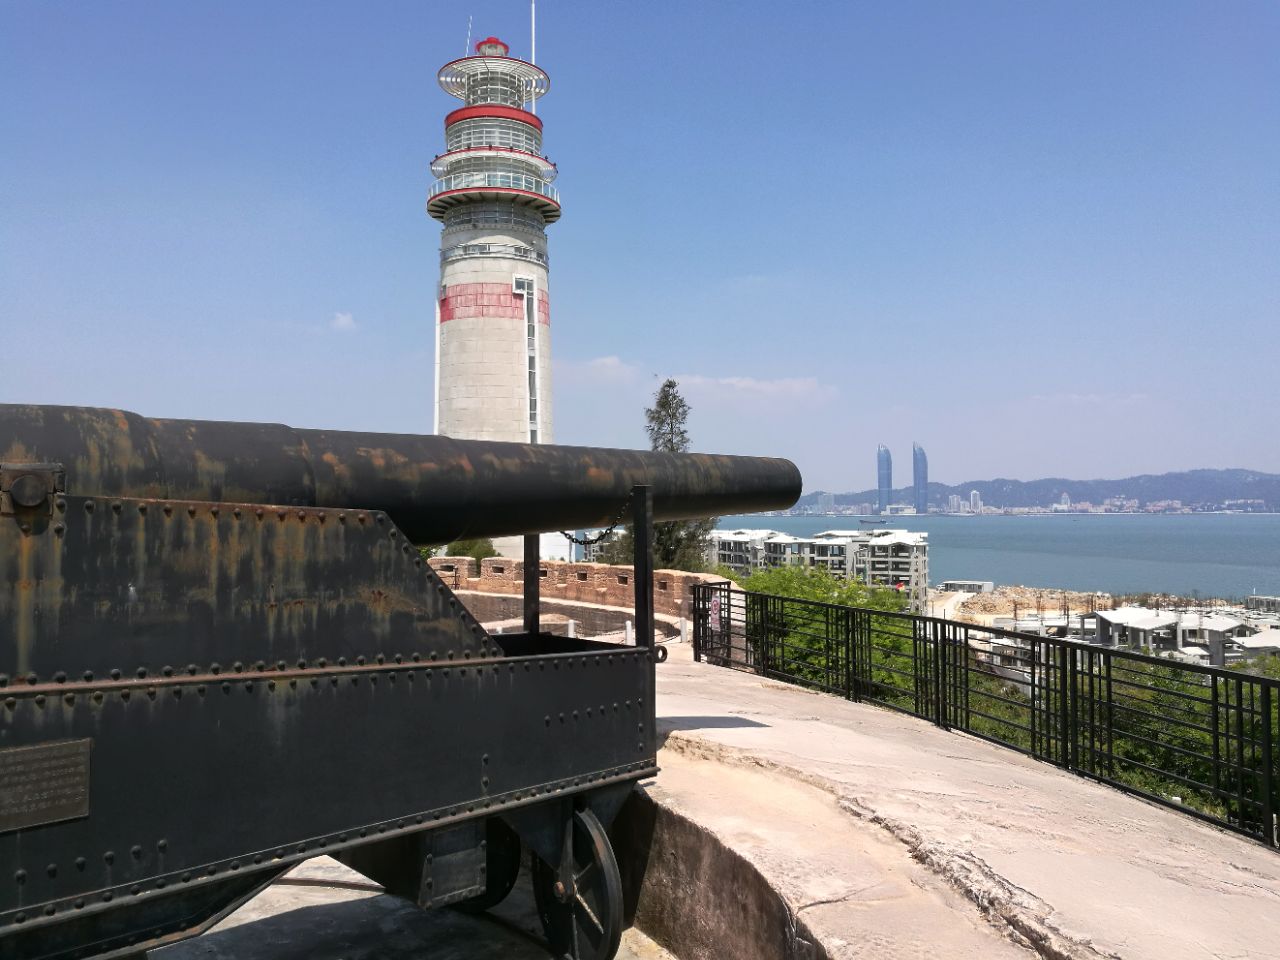 【携程攻略】天津大沽口炮台遗址景点,位于滨海新区，离市区有五十多公里路程，来的时候纪念馆没有对外开放…